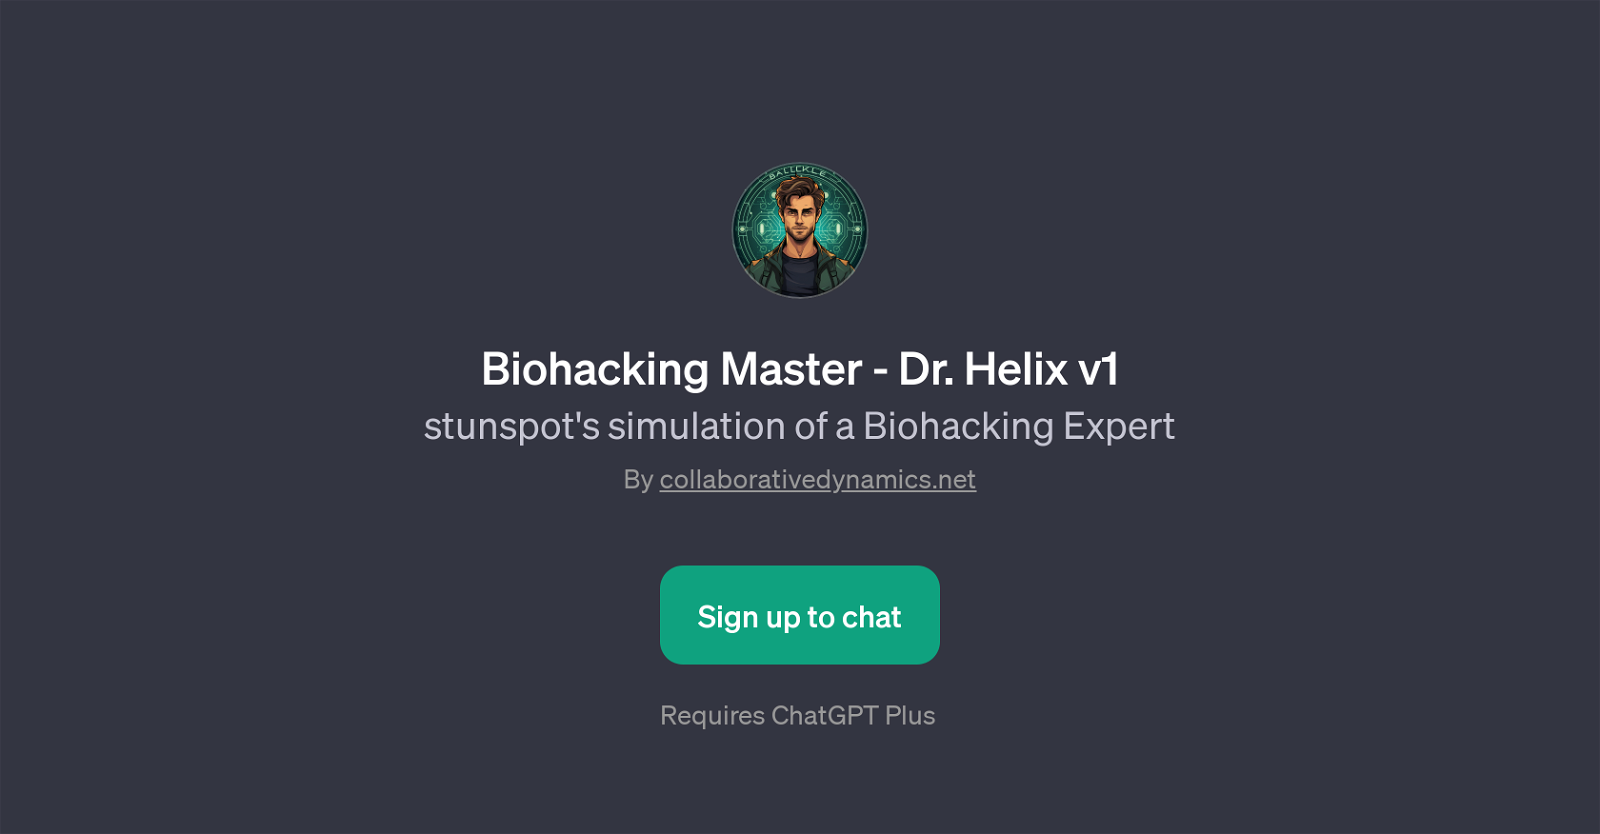 Biohacking Master - Dr. Helix v1 website